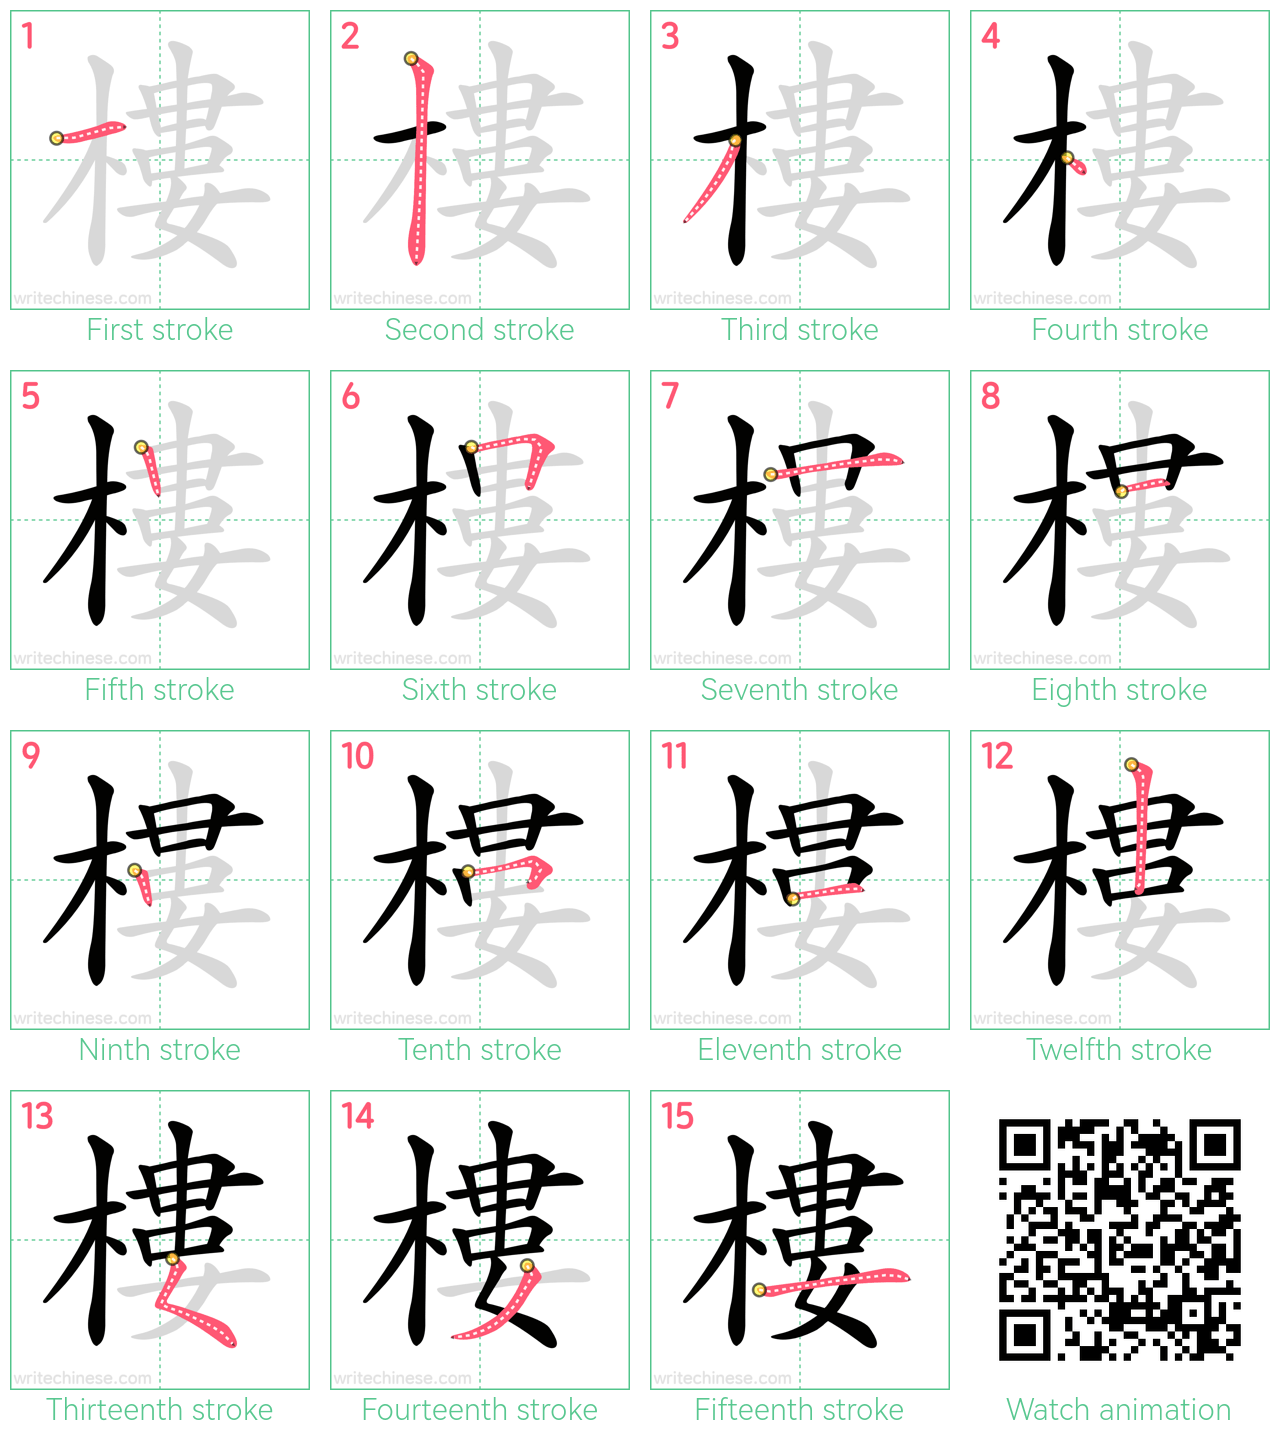 樓 step-by-step stroke order diagrams